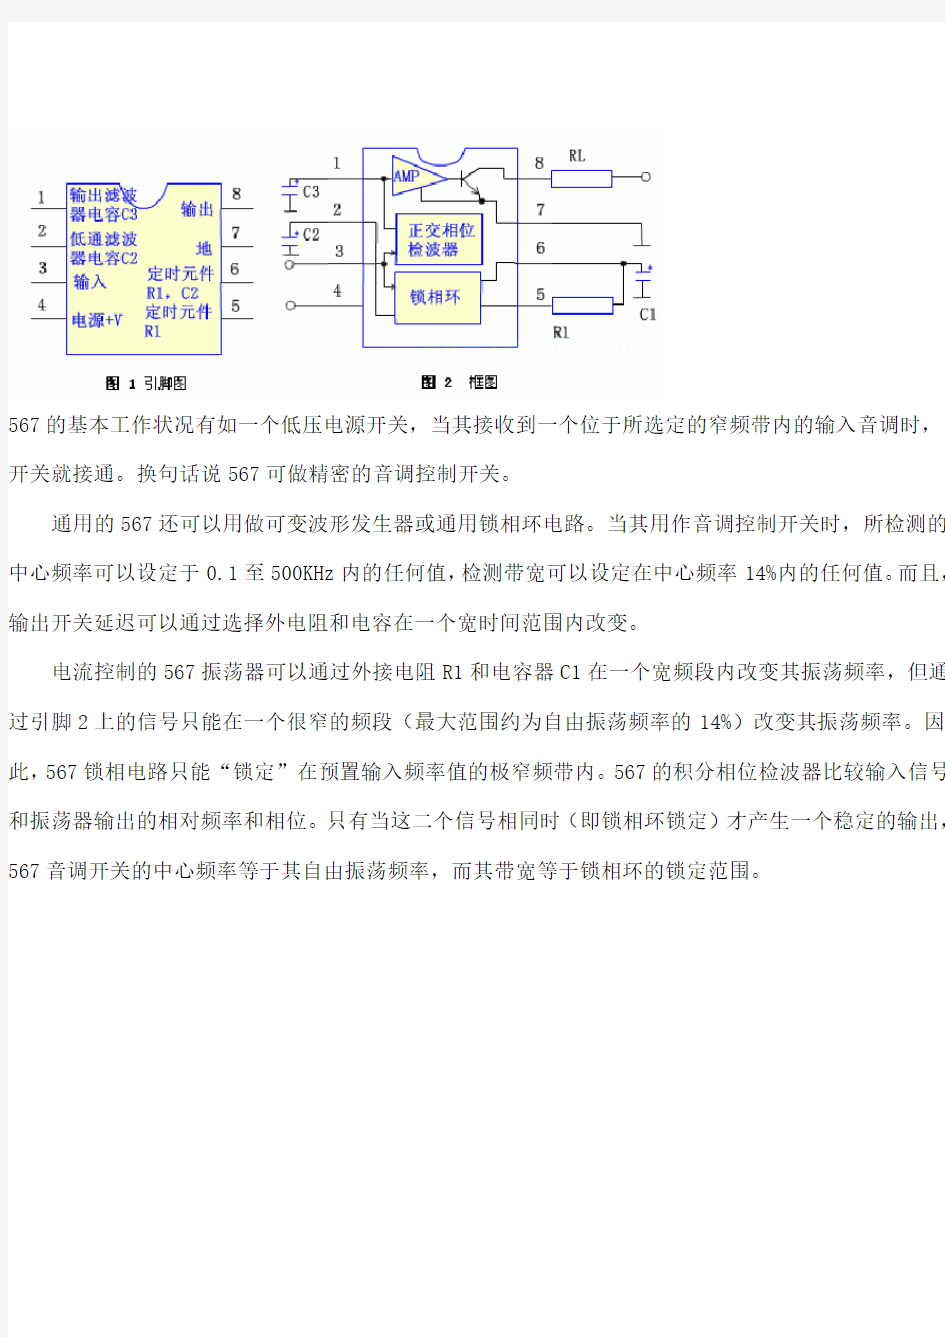 LM567,NE5657功能,原理及应用详解(中文资料)